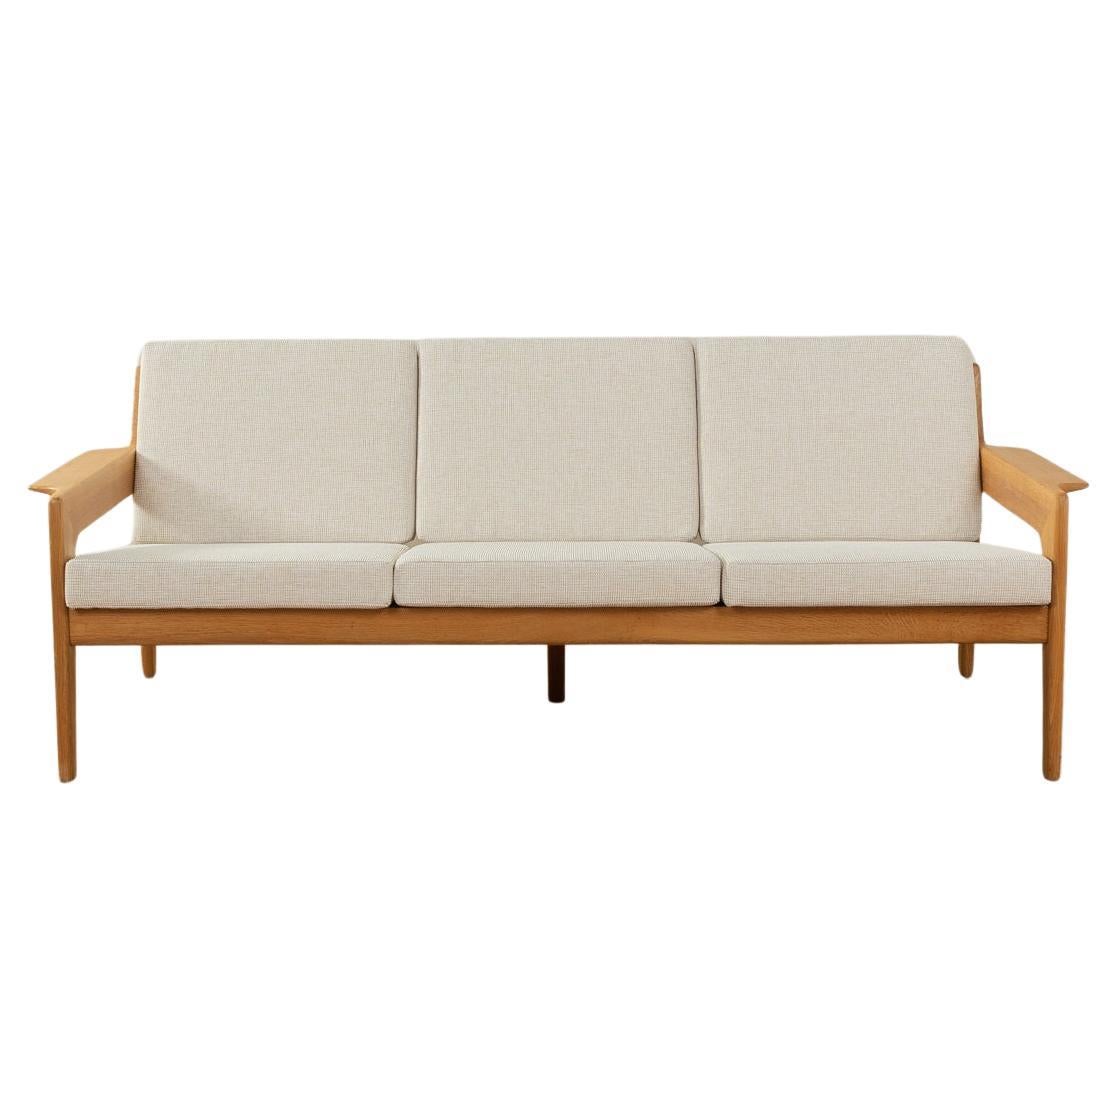 1960s Sofa, Arne Wahl Iversen For Sale